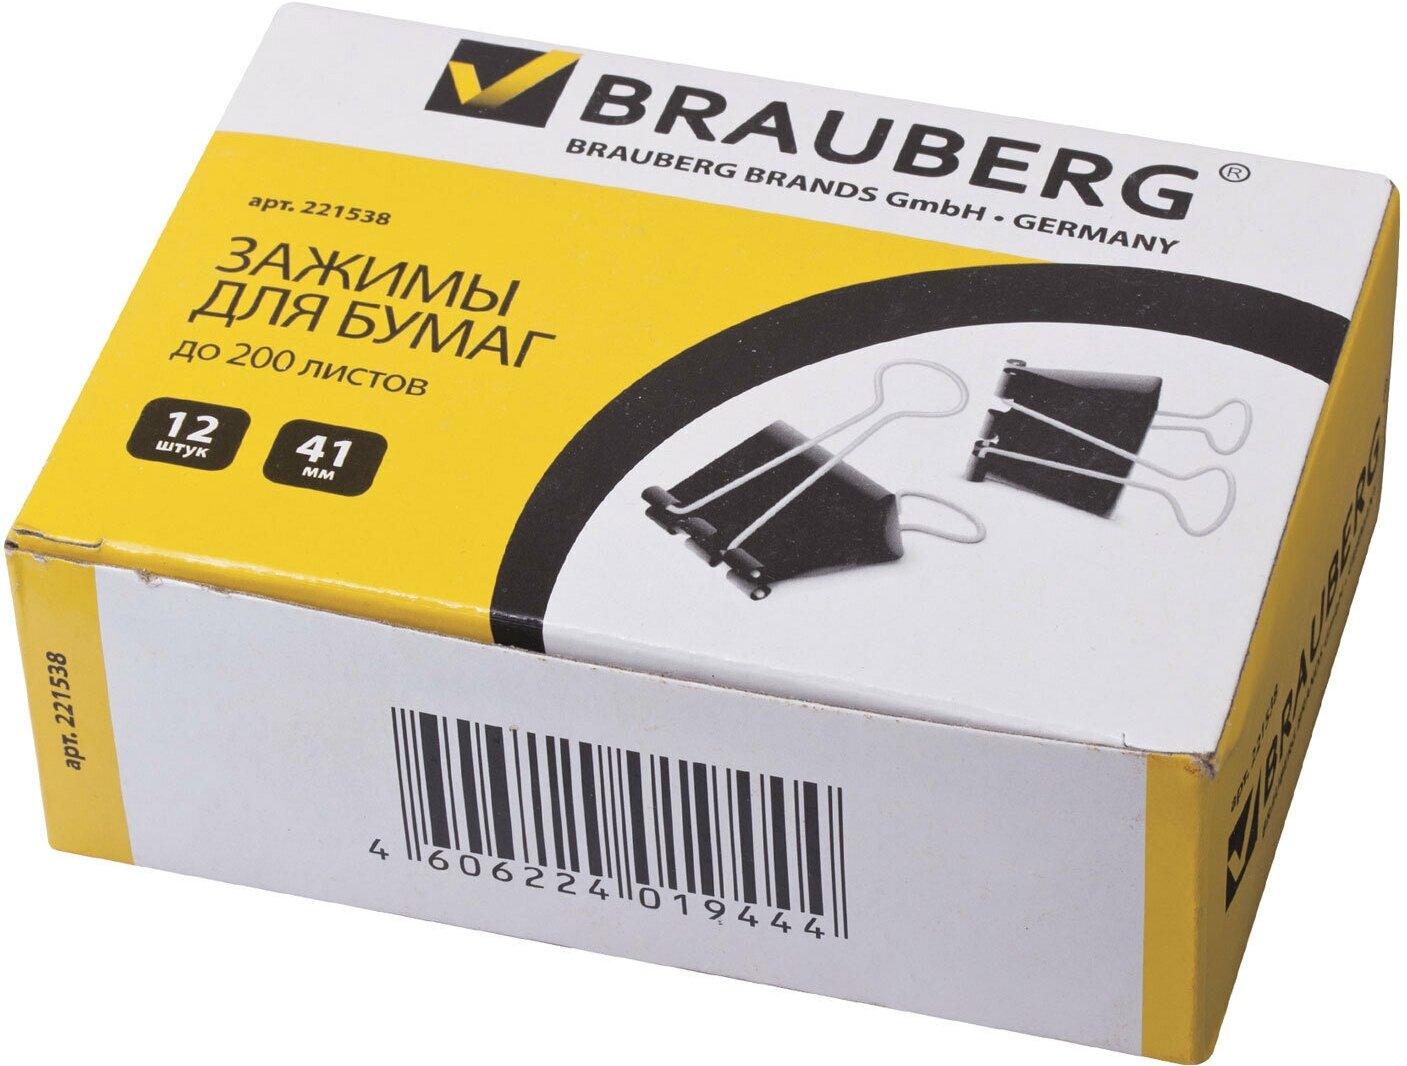 Зажимы для бумаг Brauberg 12 шт, 41 мм, на 200 листов, черные (221538)